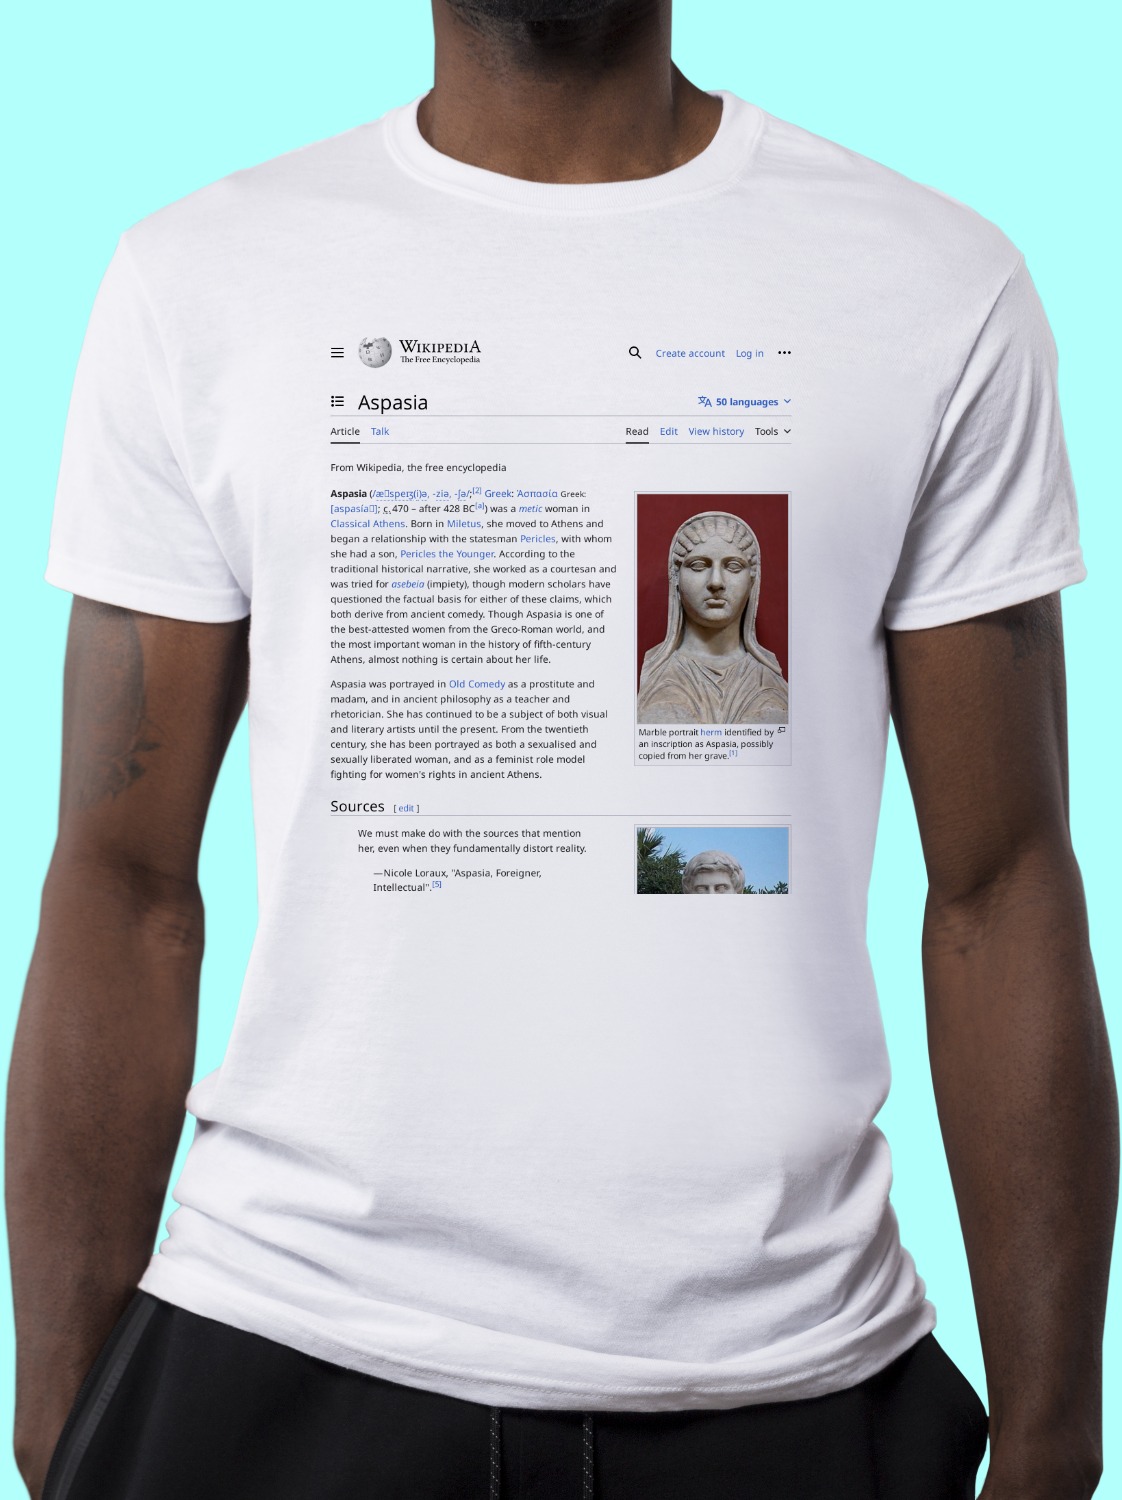 Aspasia_of_Miletus Wikipedia Shirt